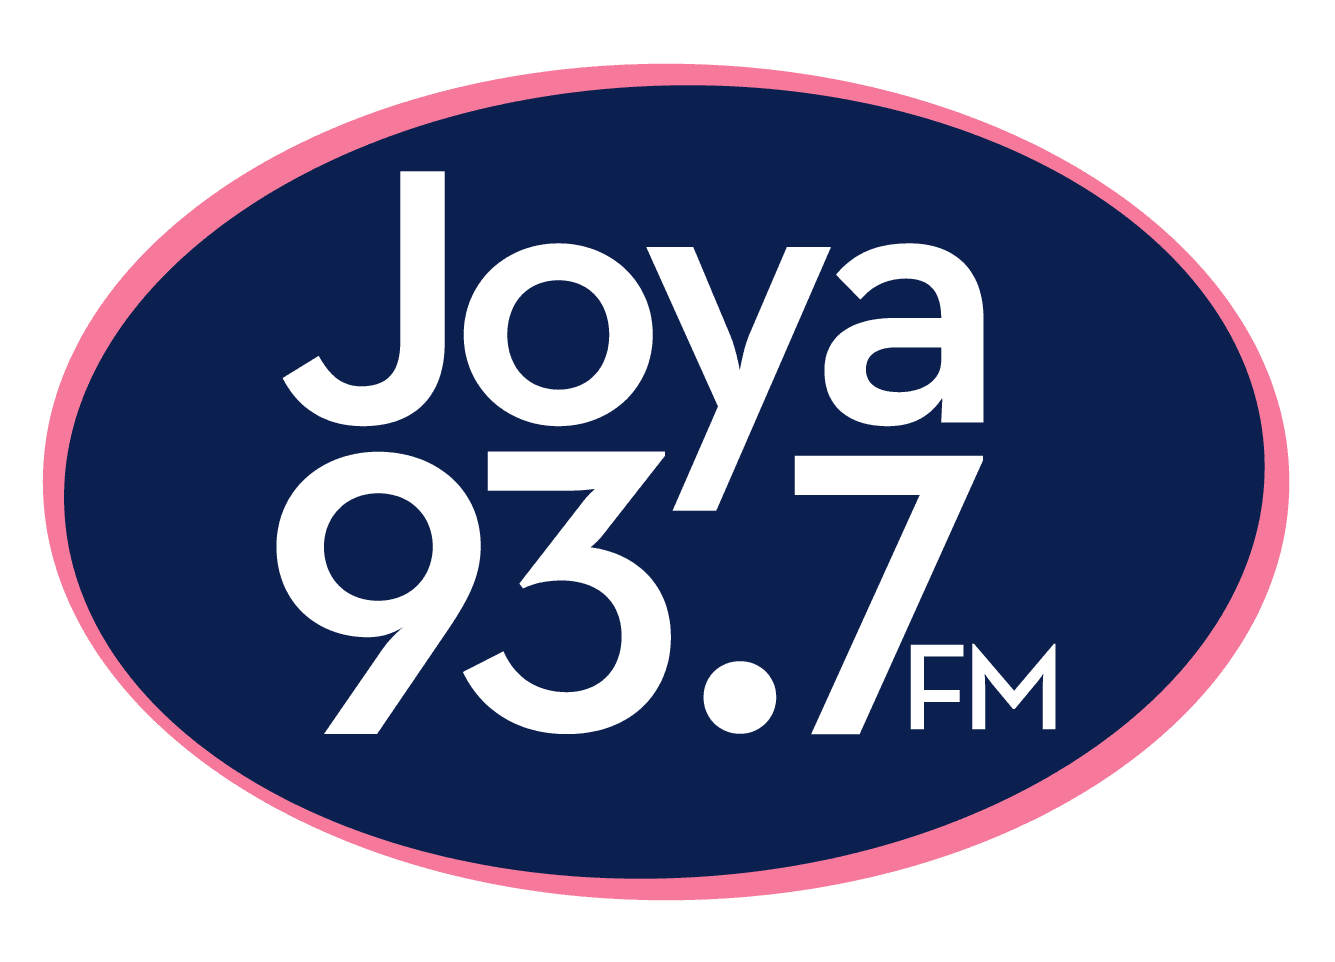 Stereo Joya 93.7 FM